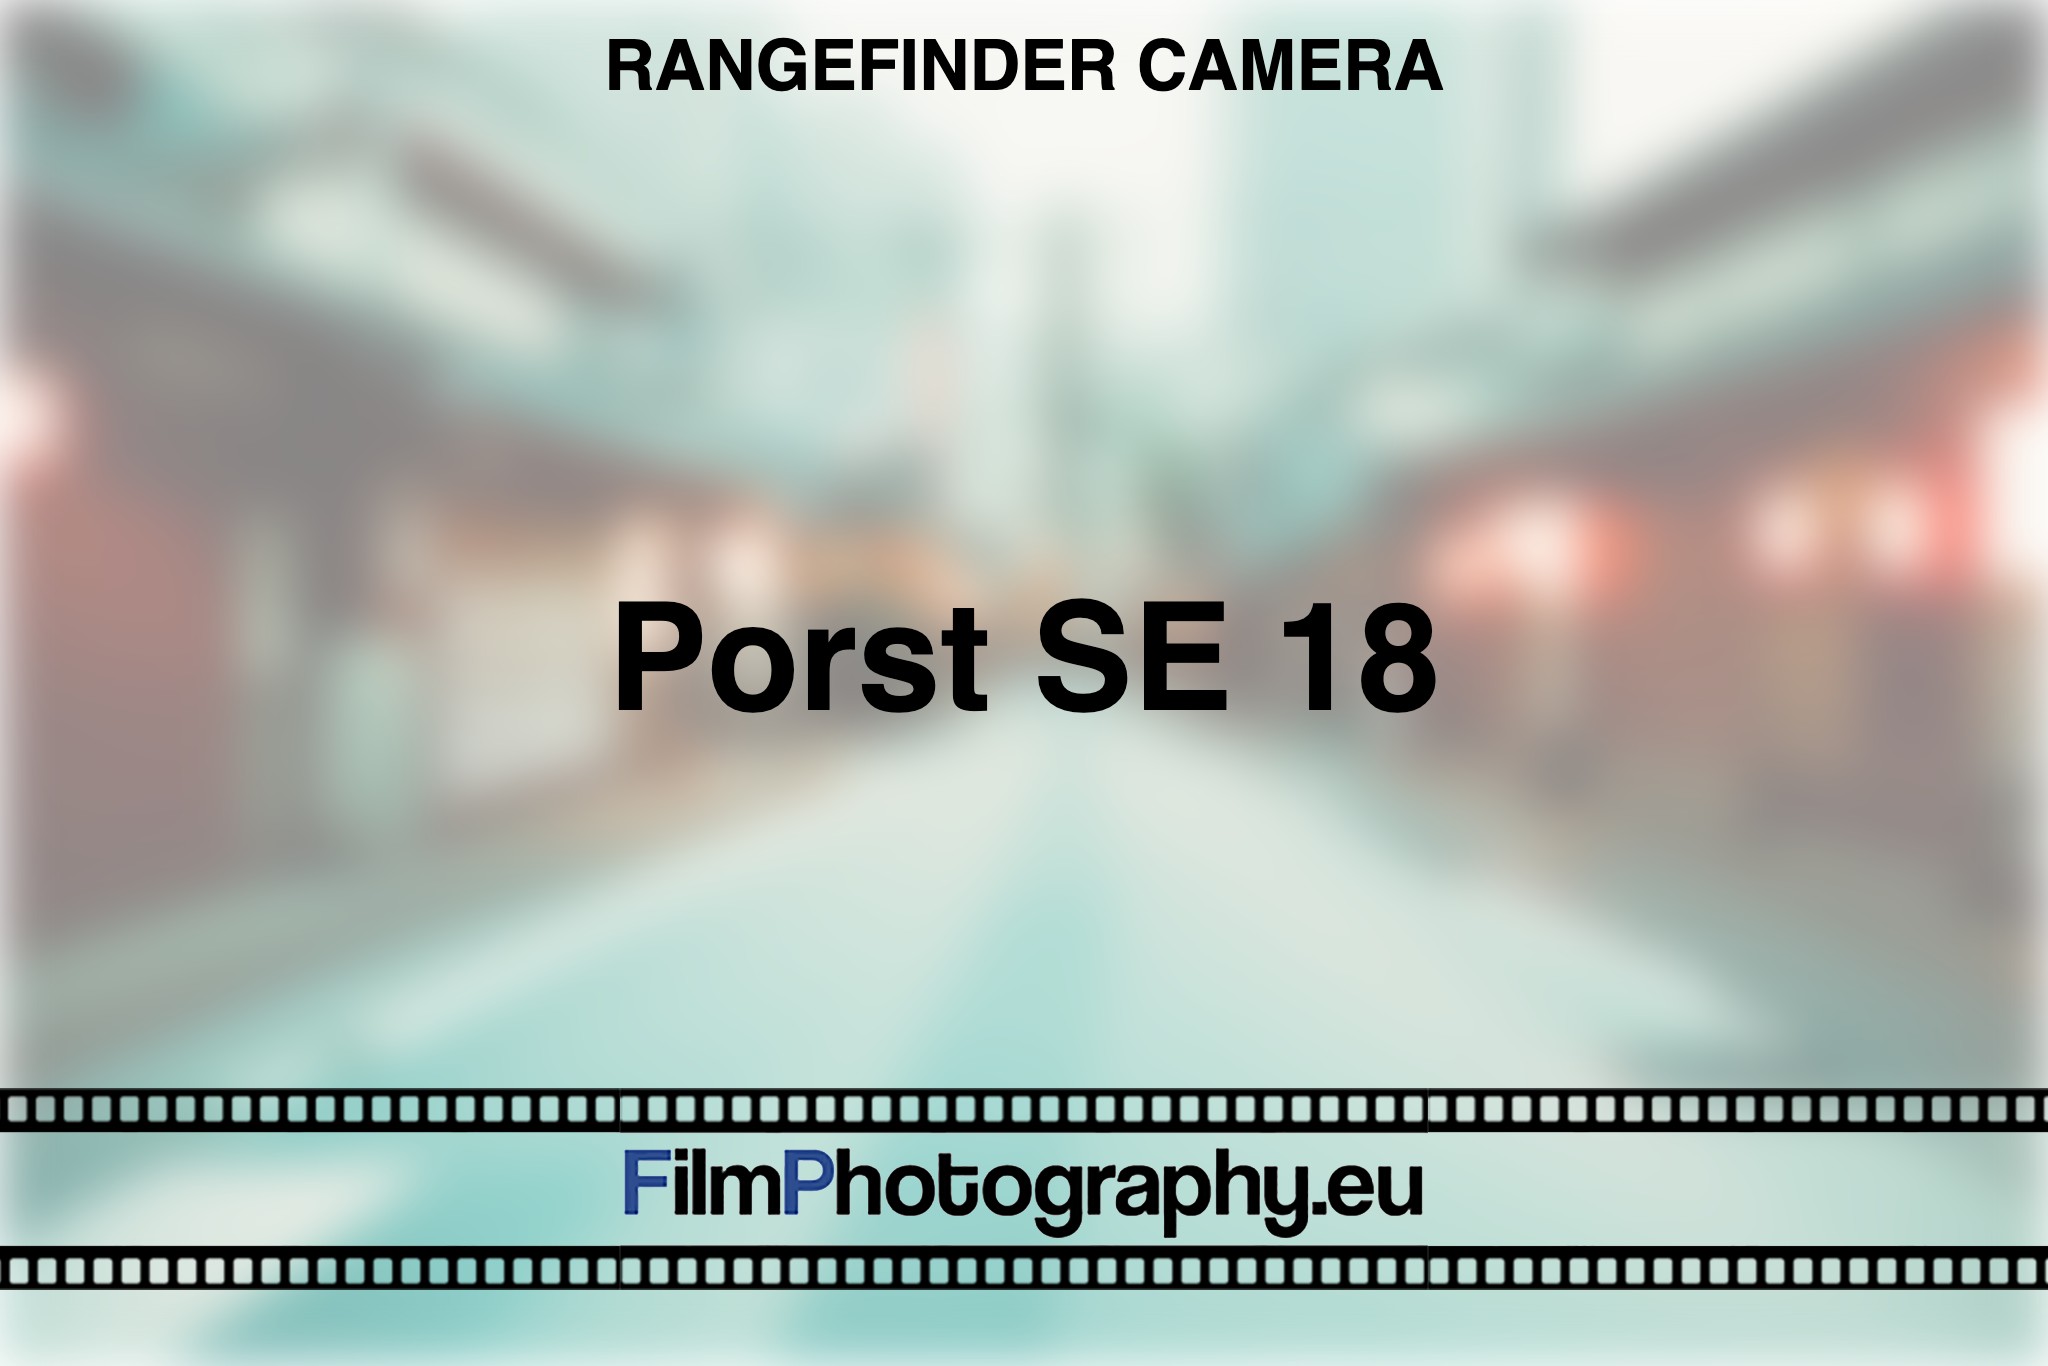 porst-se-18-rangefinder-camera-bnv